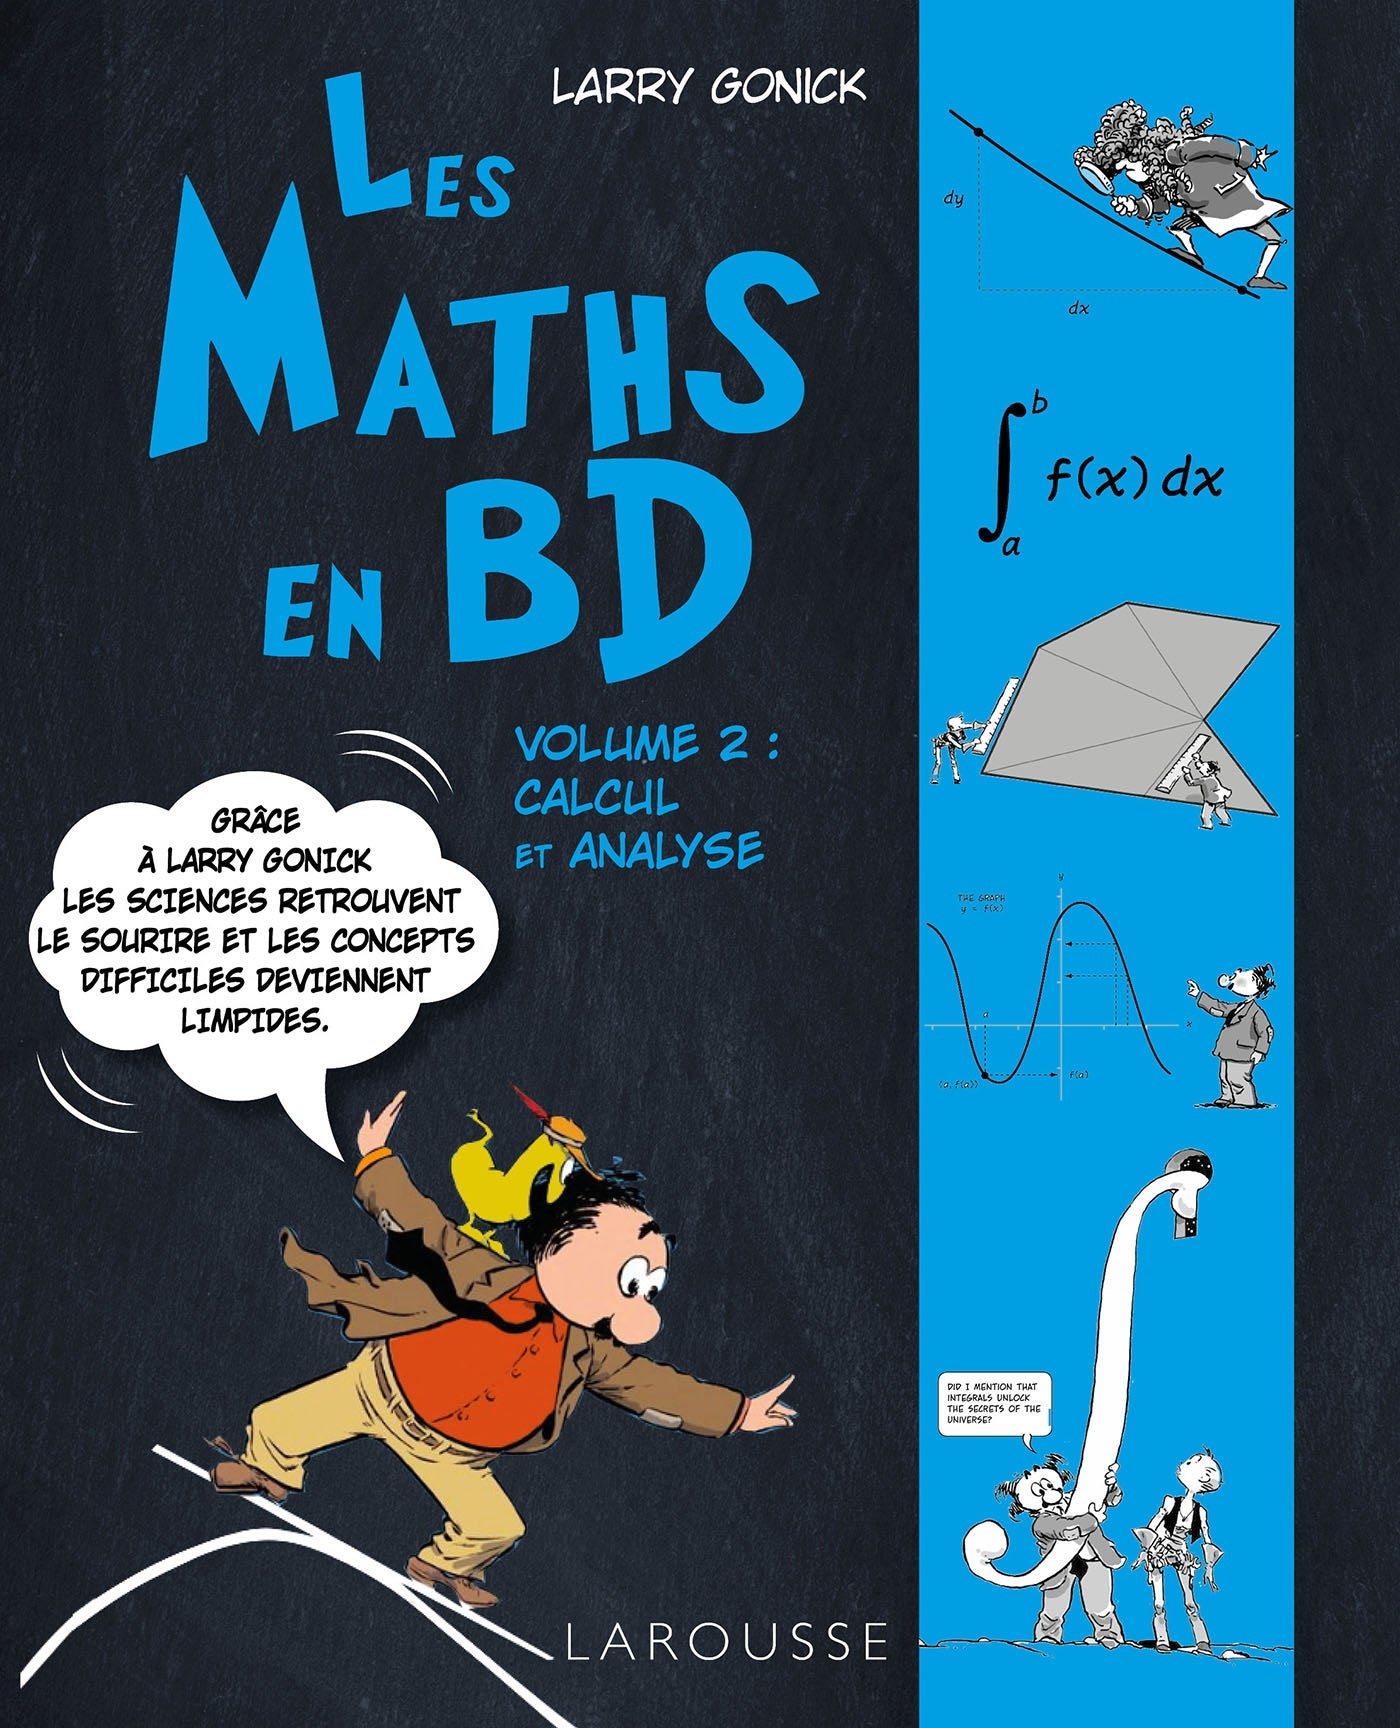 Les maths en BD volume 2 calcul et analyse - Scientific Curiosity